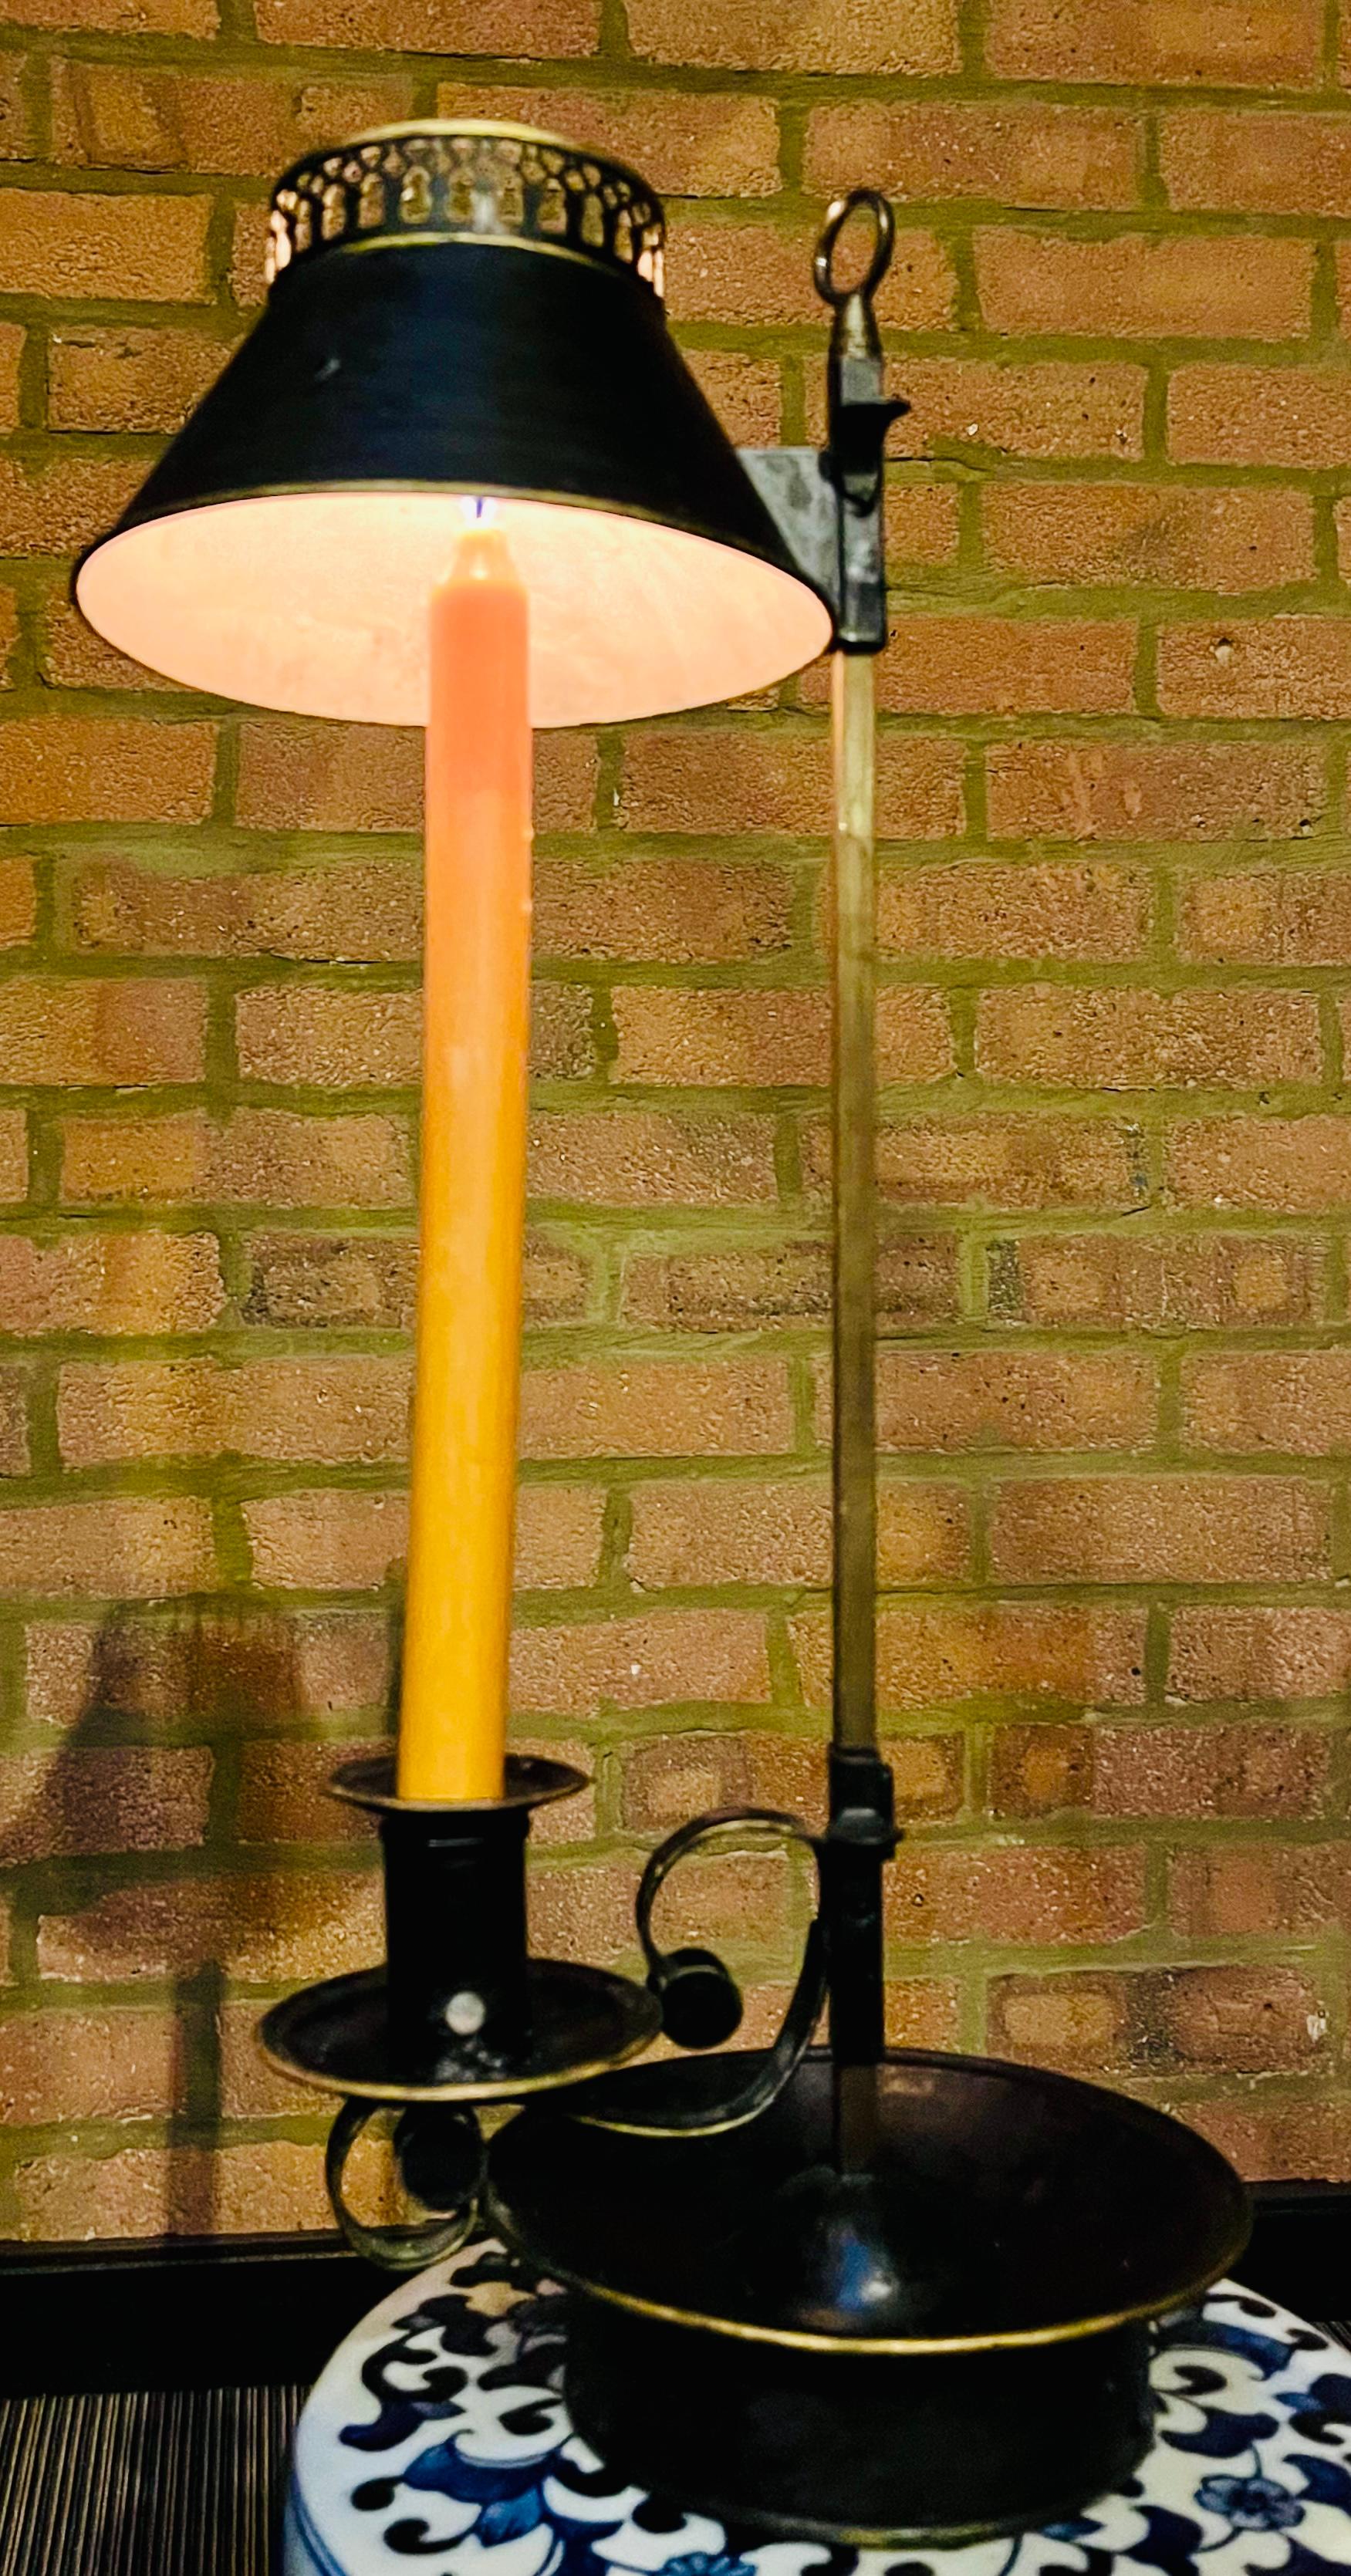 Magnifique lampe de table ancienne, vers 1820, d'époque Régence, en laiton et peinture noire/dorée Tole Bouillotte. La lampe est dotée d'un abat-jour réglable en forme de tole.  a été peinte à la main en noir avec des bordures dorées et finie avec